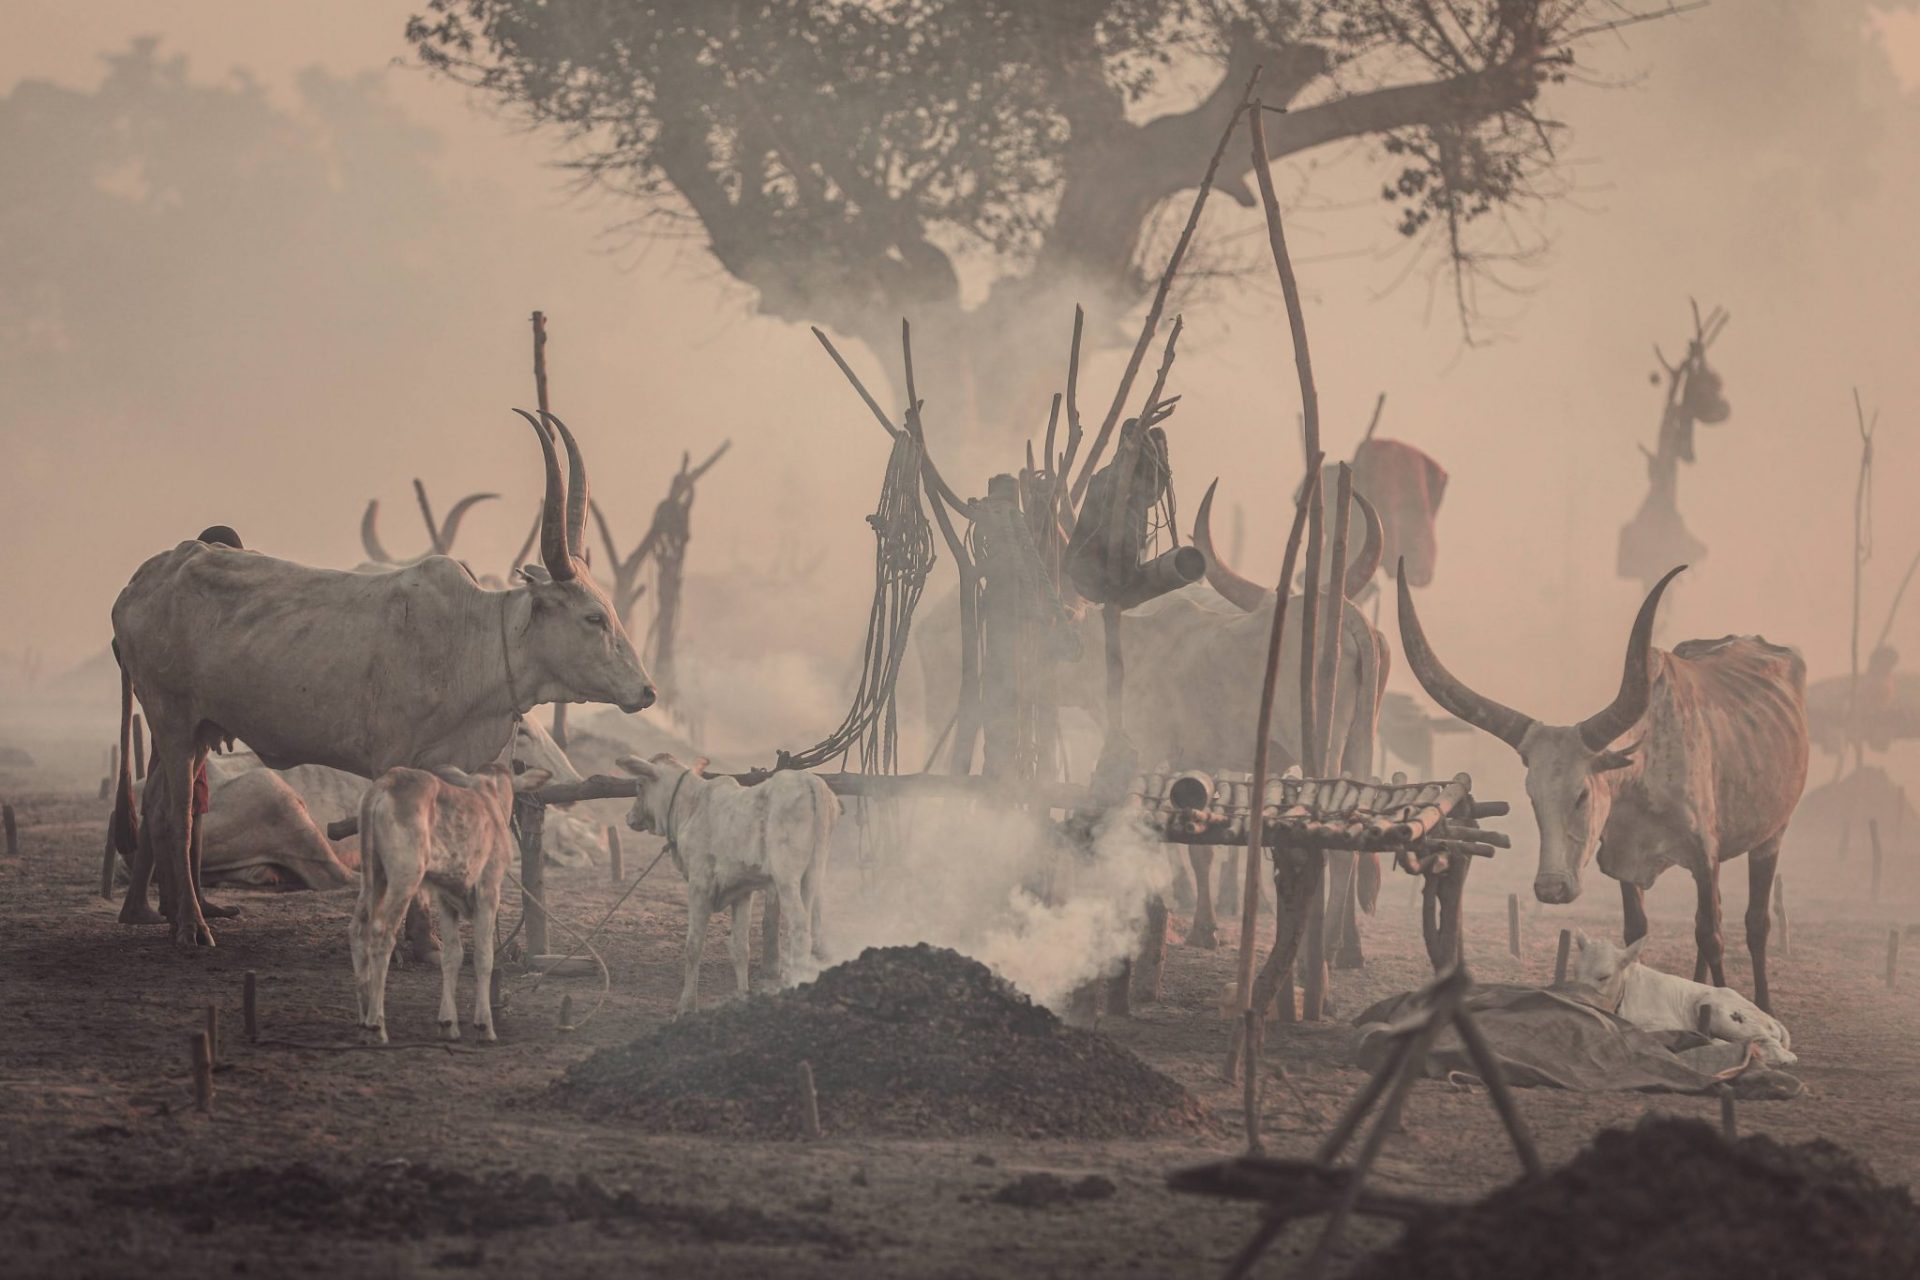 Mundari cattle camp photo- Laba Africa Expeditions